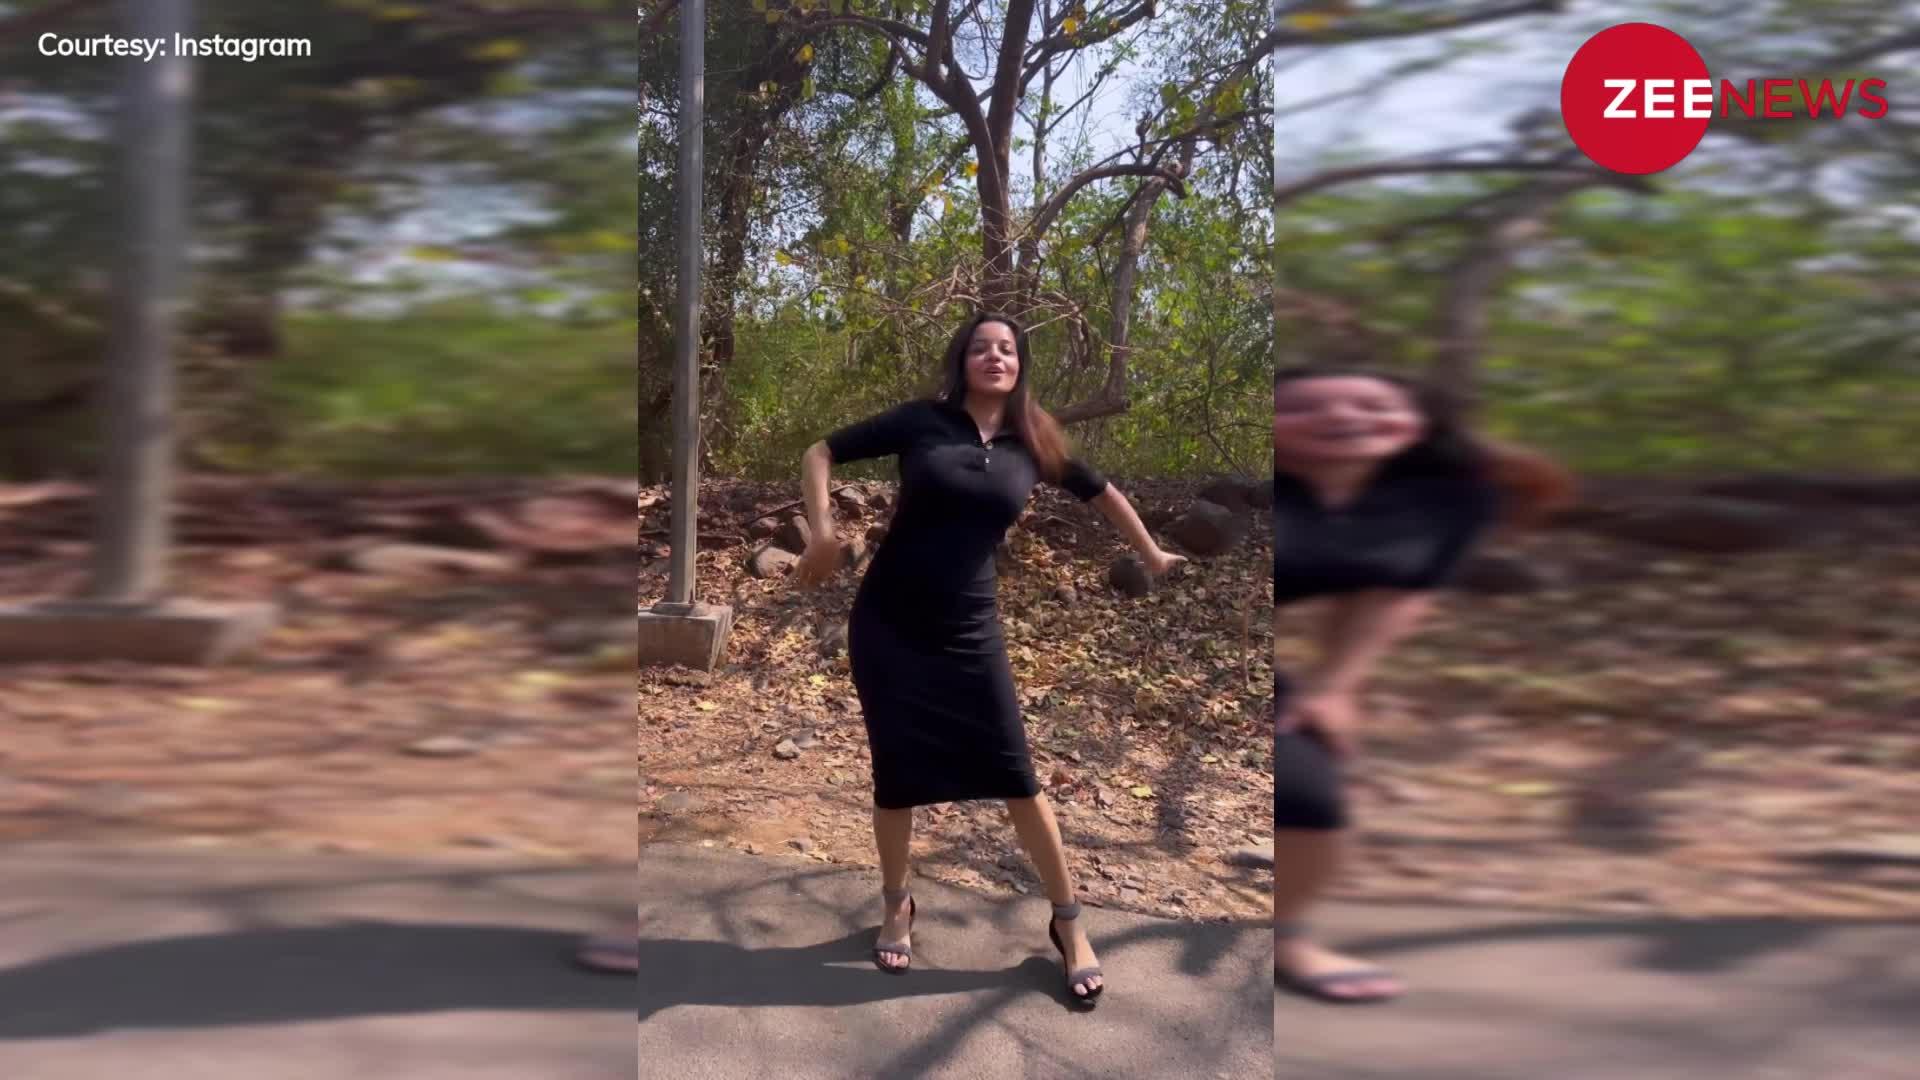 भोजपुरी क्वीन Monalisa ने बीच रोड अपने डांस से मचाया बवाल, वीडियो देख दीवाने बने फैंस; बोले- 'कुड़िए तेरी वाइब'